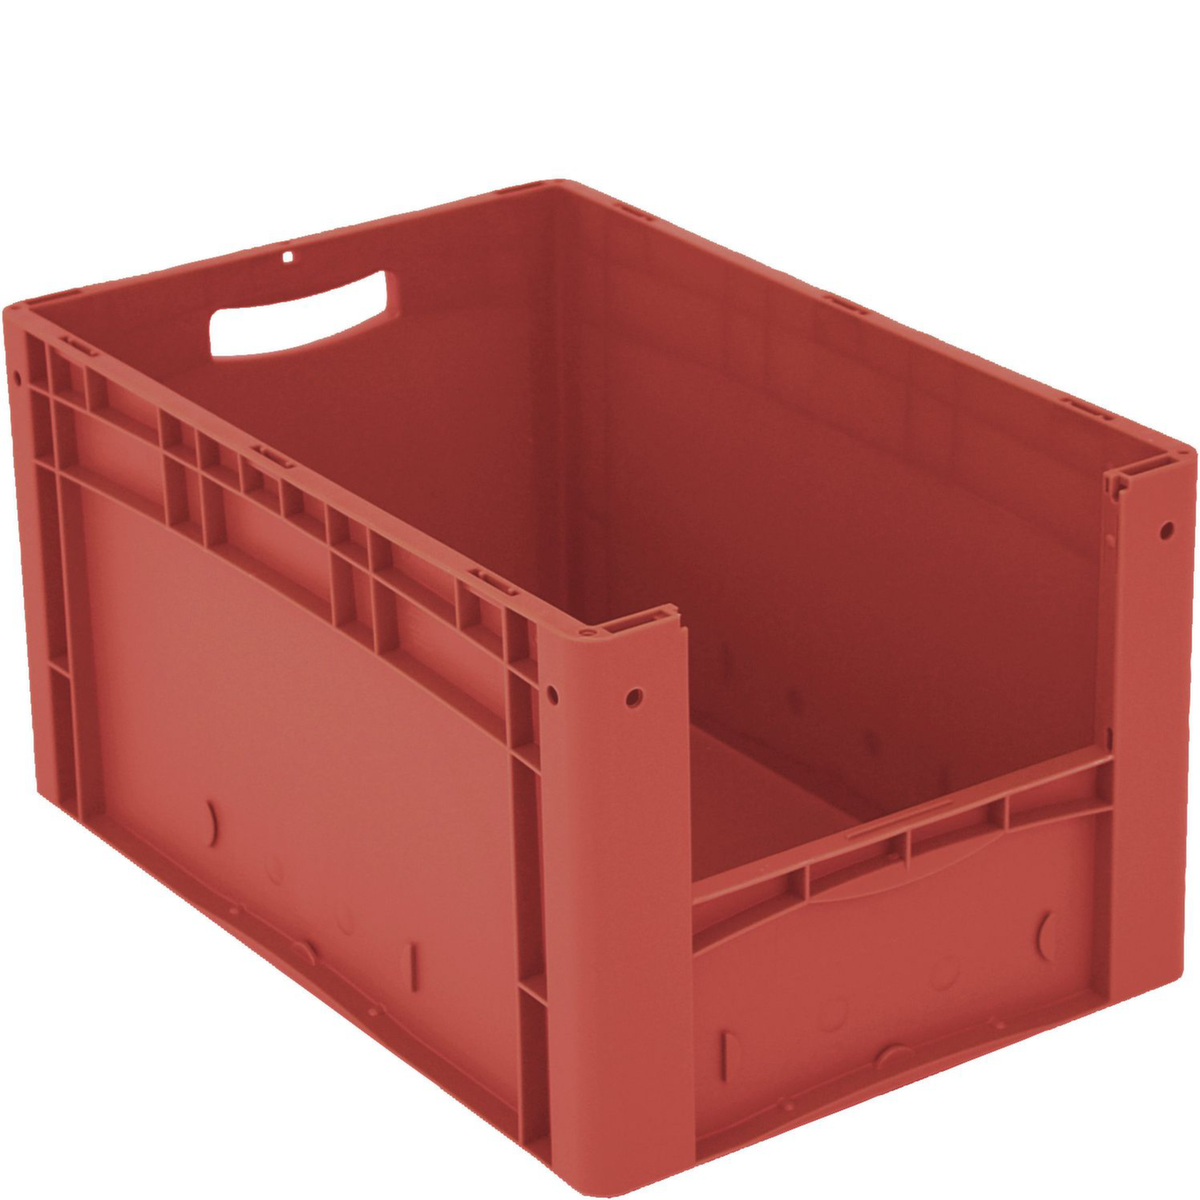 Euronorm zichtbare opslagcontainer met toegangsopening, rood, HxLxB 320x600x400 mm  ZOOM